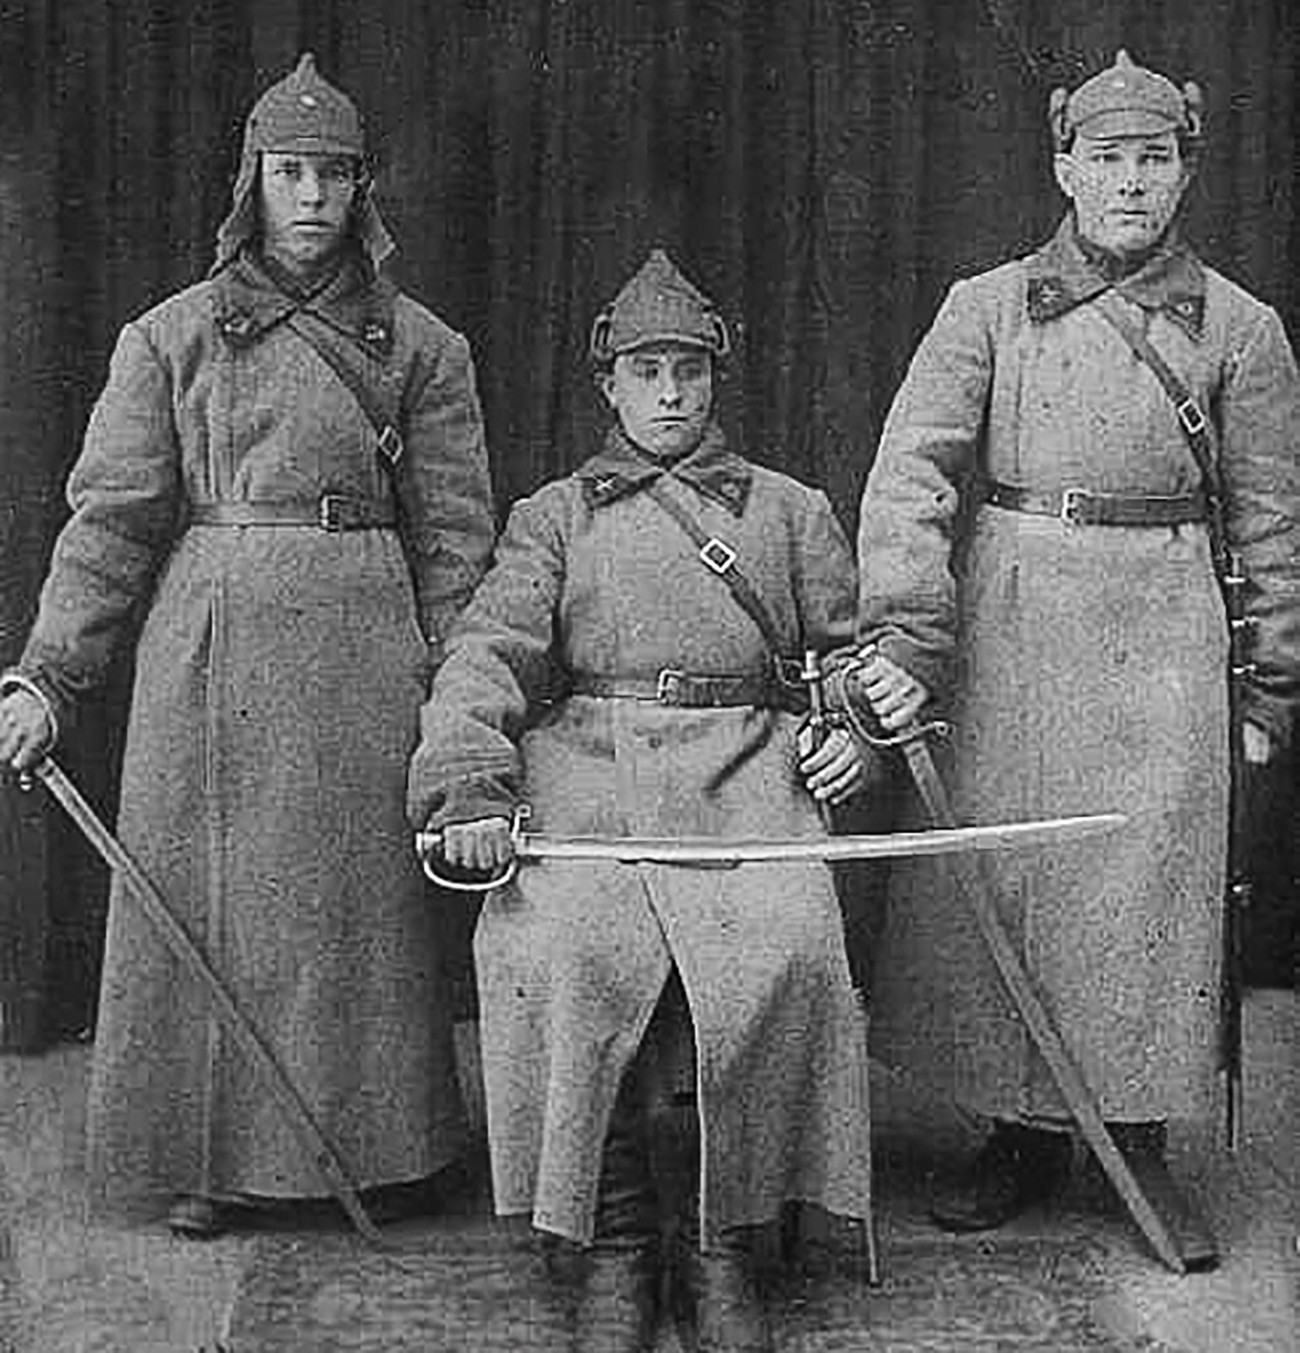 Cavalaria do Exército Vermelho
